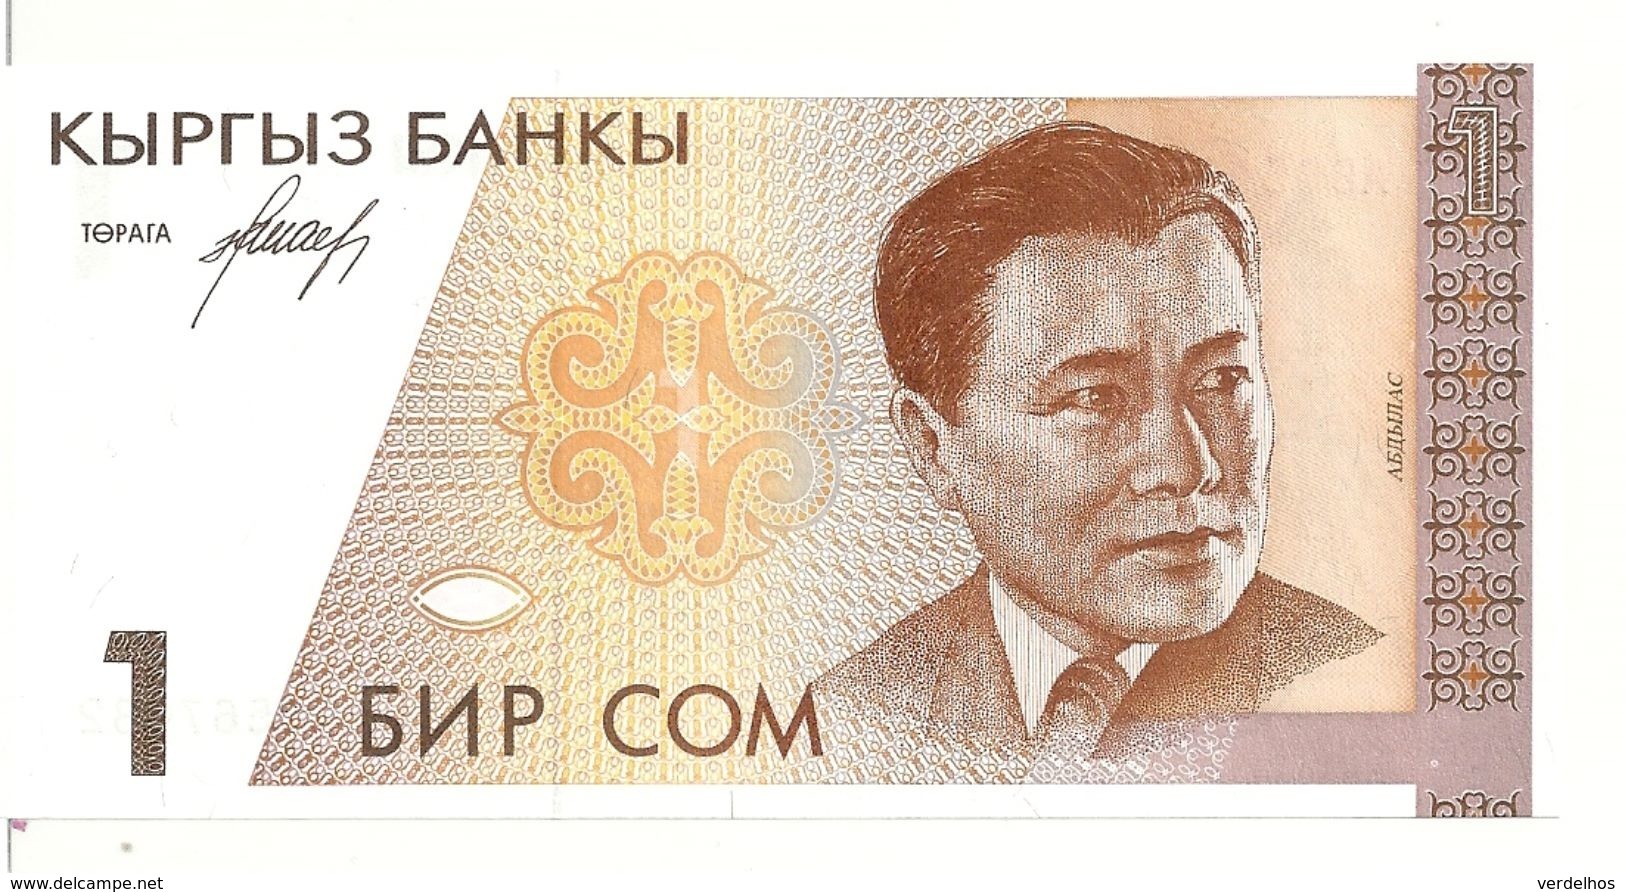 KIRGHIZISTAN 1 SOM ND1994 UNC P 7 - Kirgizïe